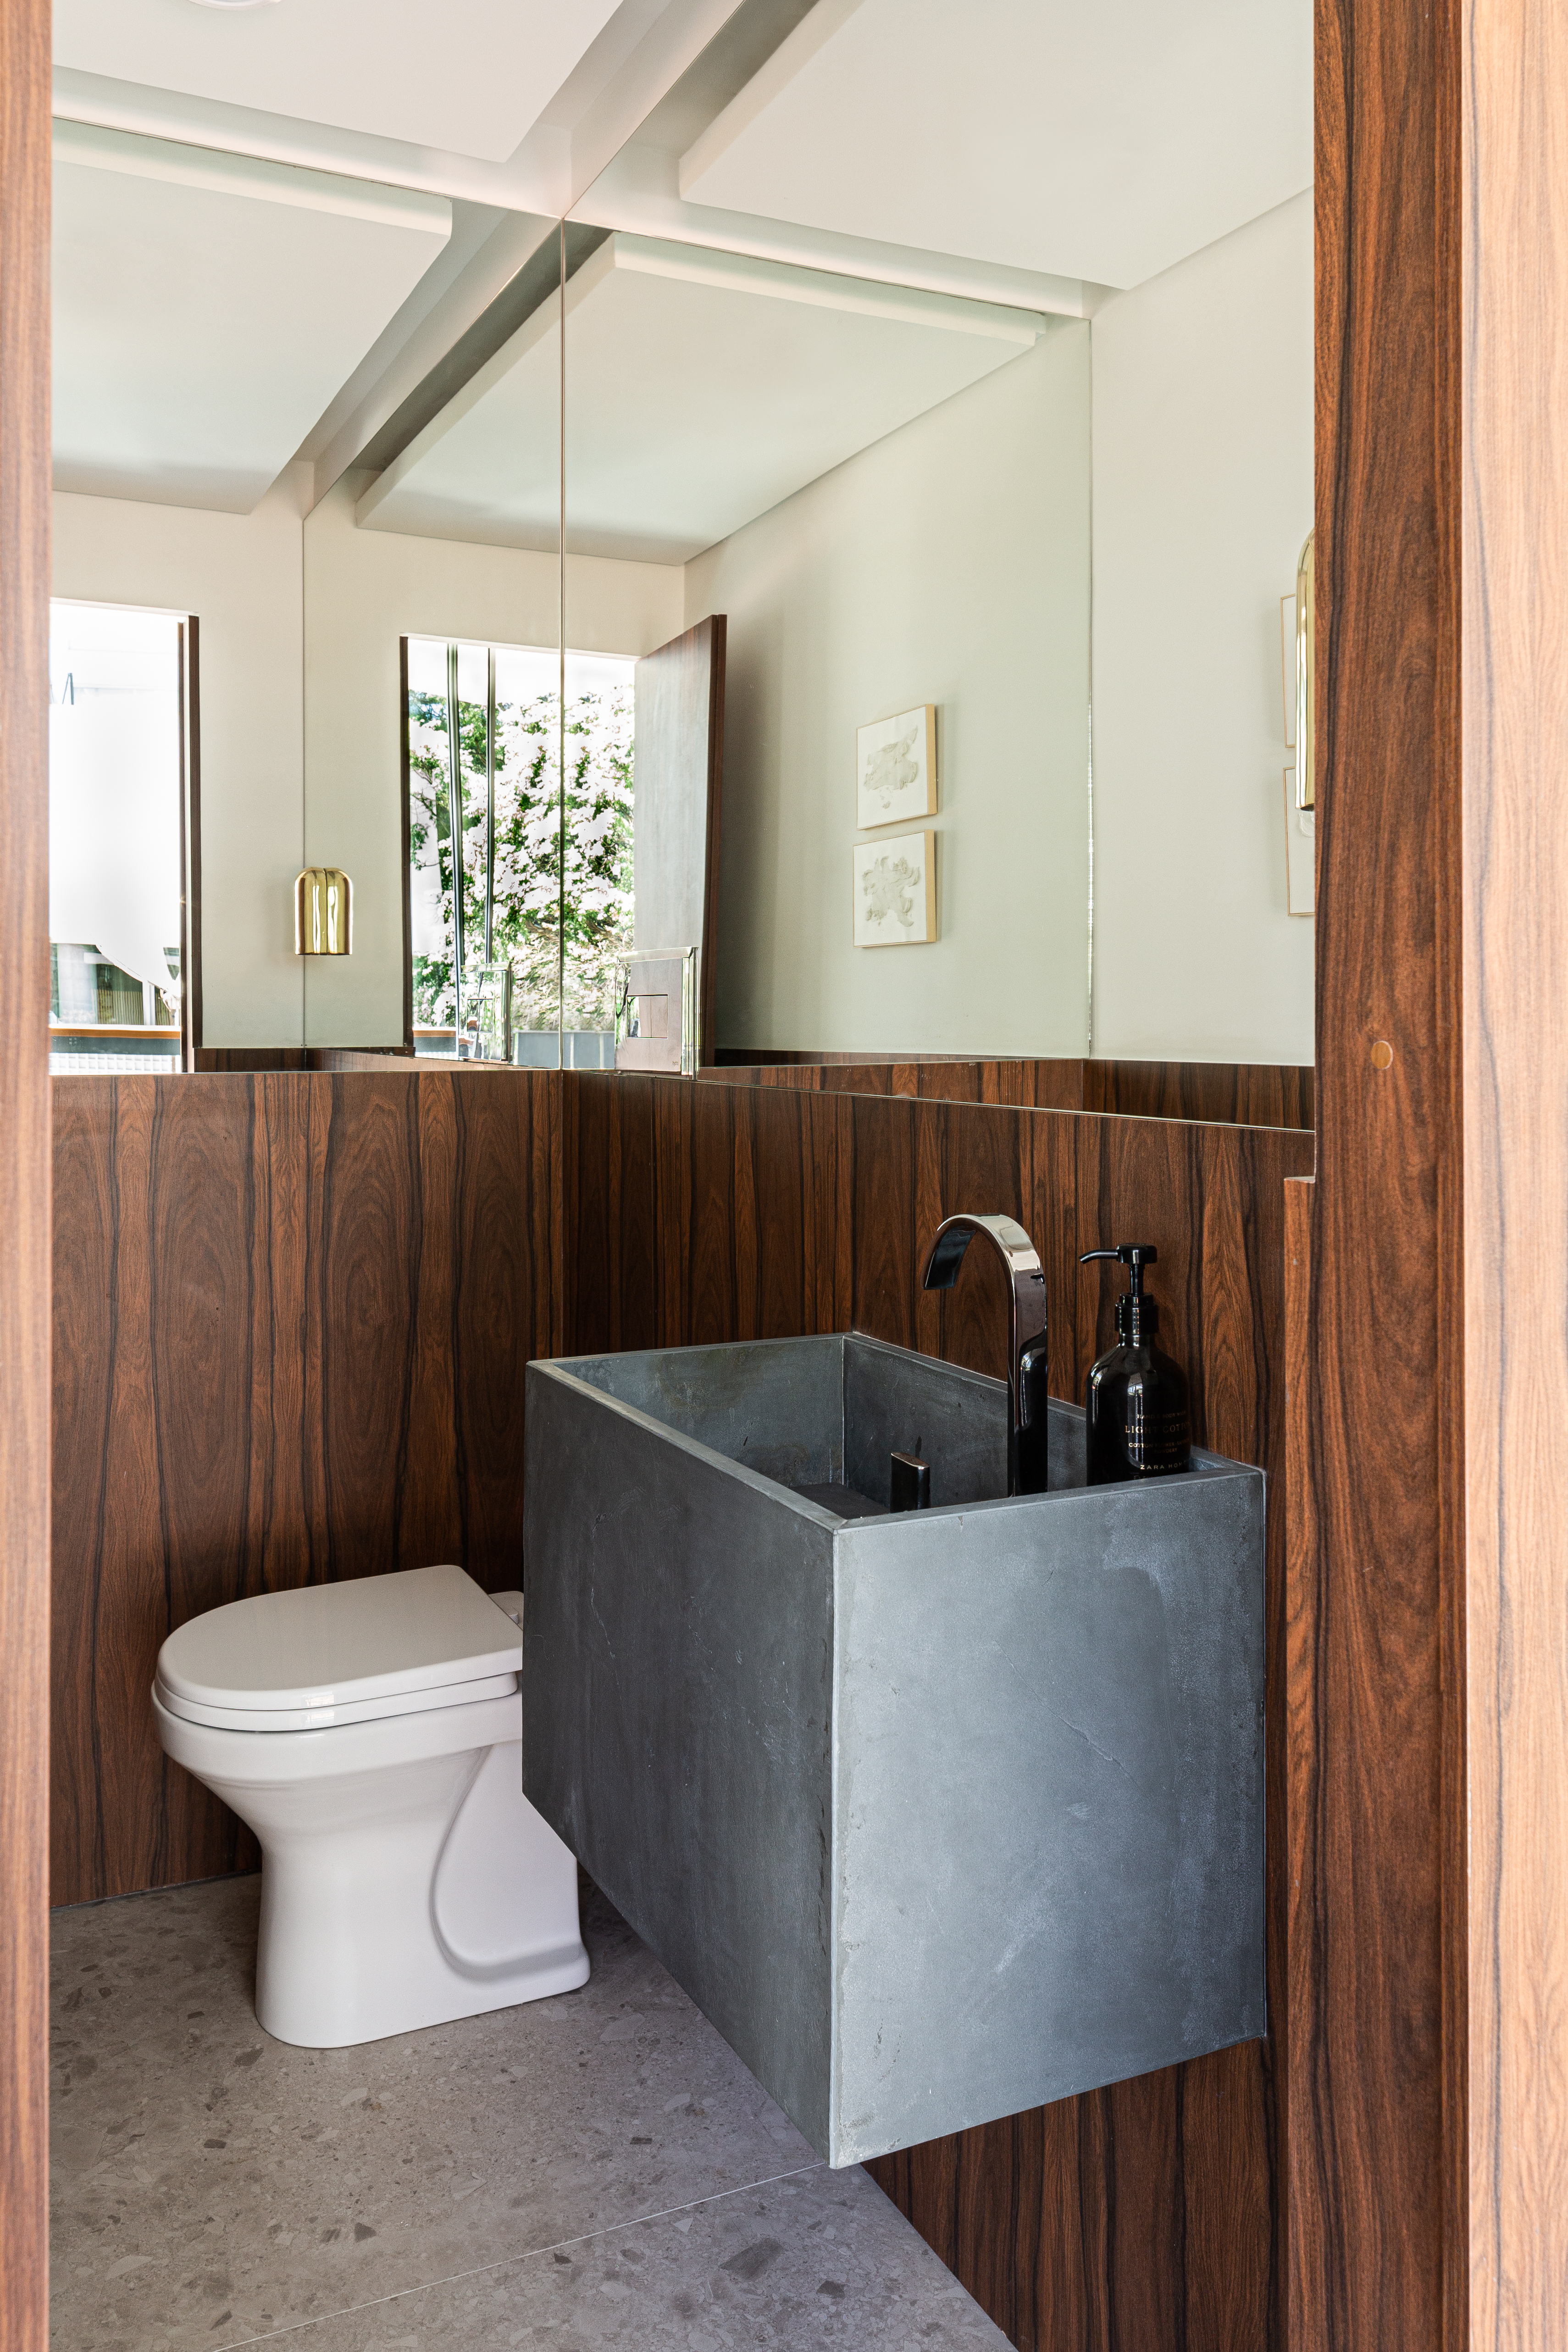 Painéis em madeira pau ferro contrastam com laje de concreto neste apê. Projeto de Estúdio Pluri. Na foto, banheiro pequeno com cuba esculpida.